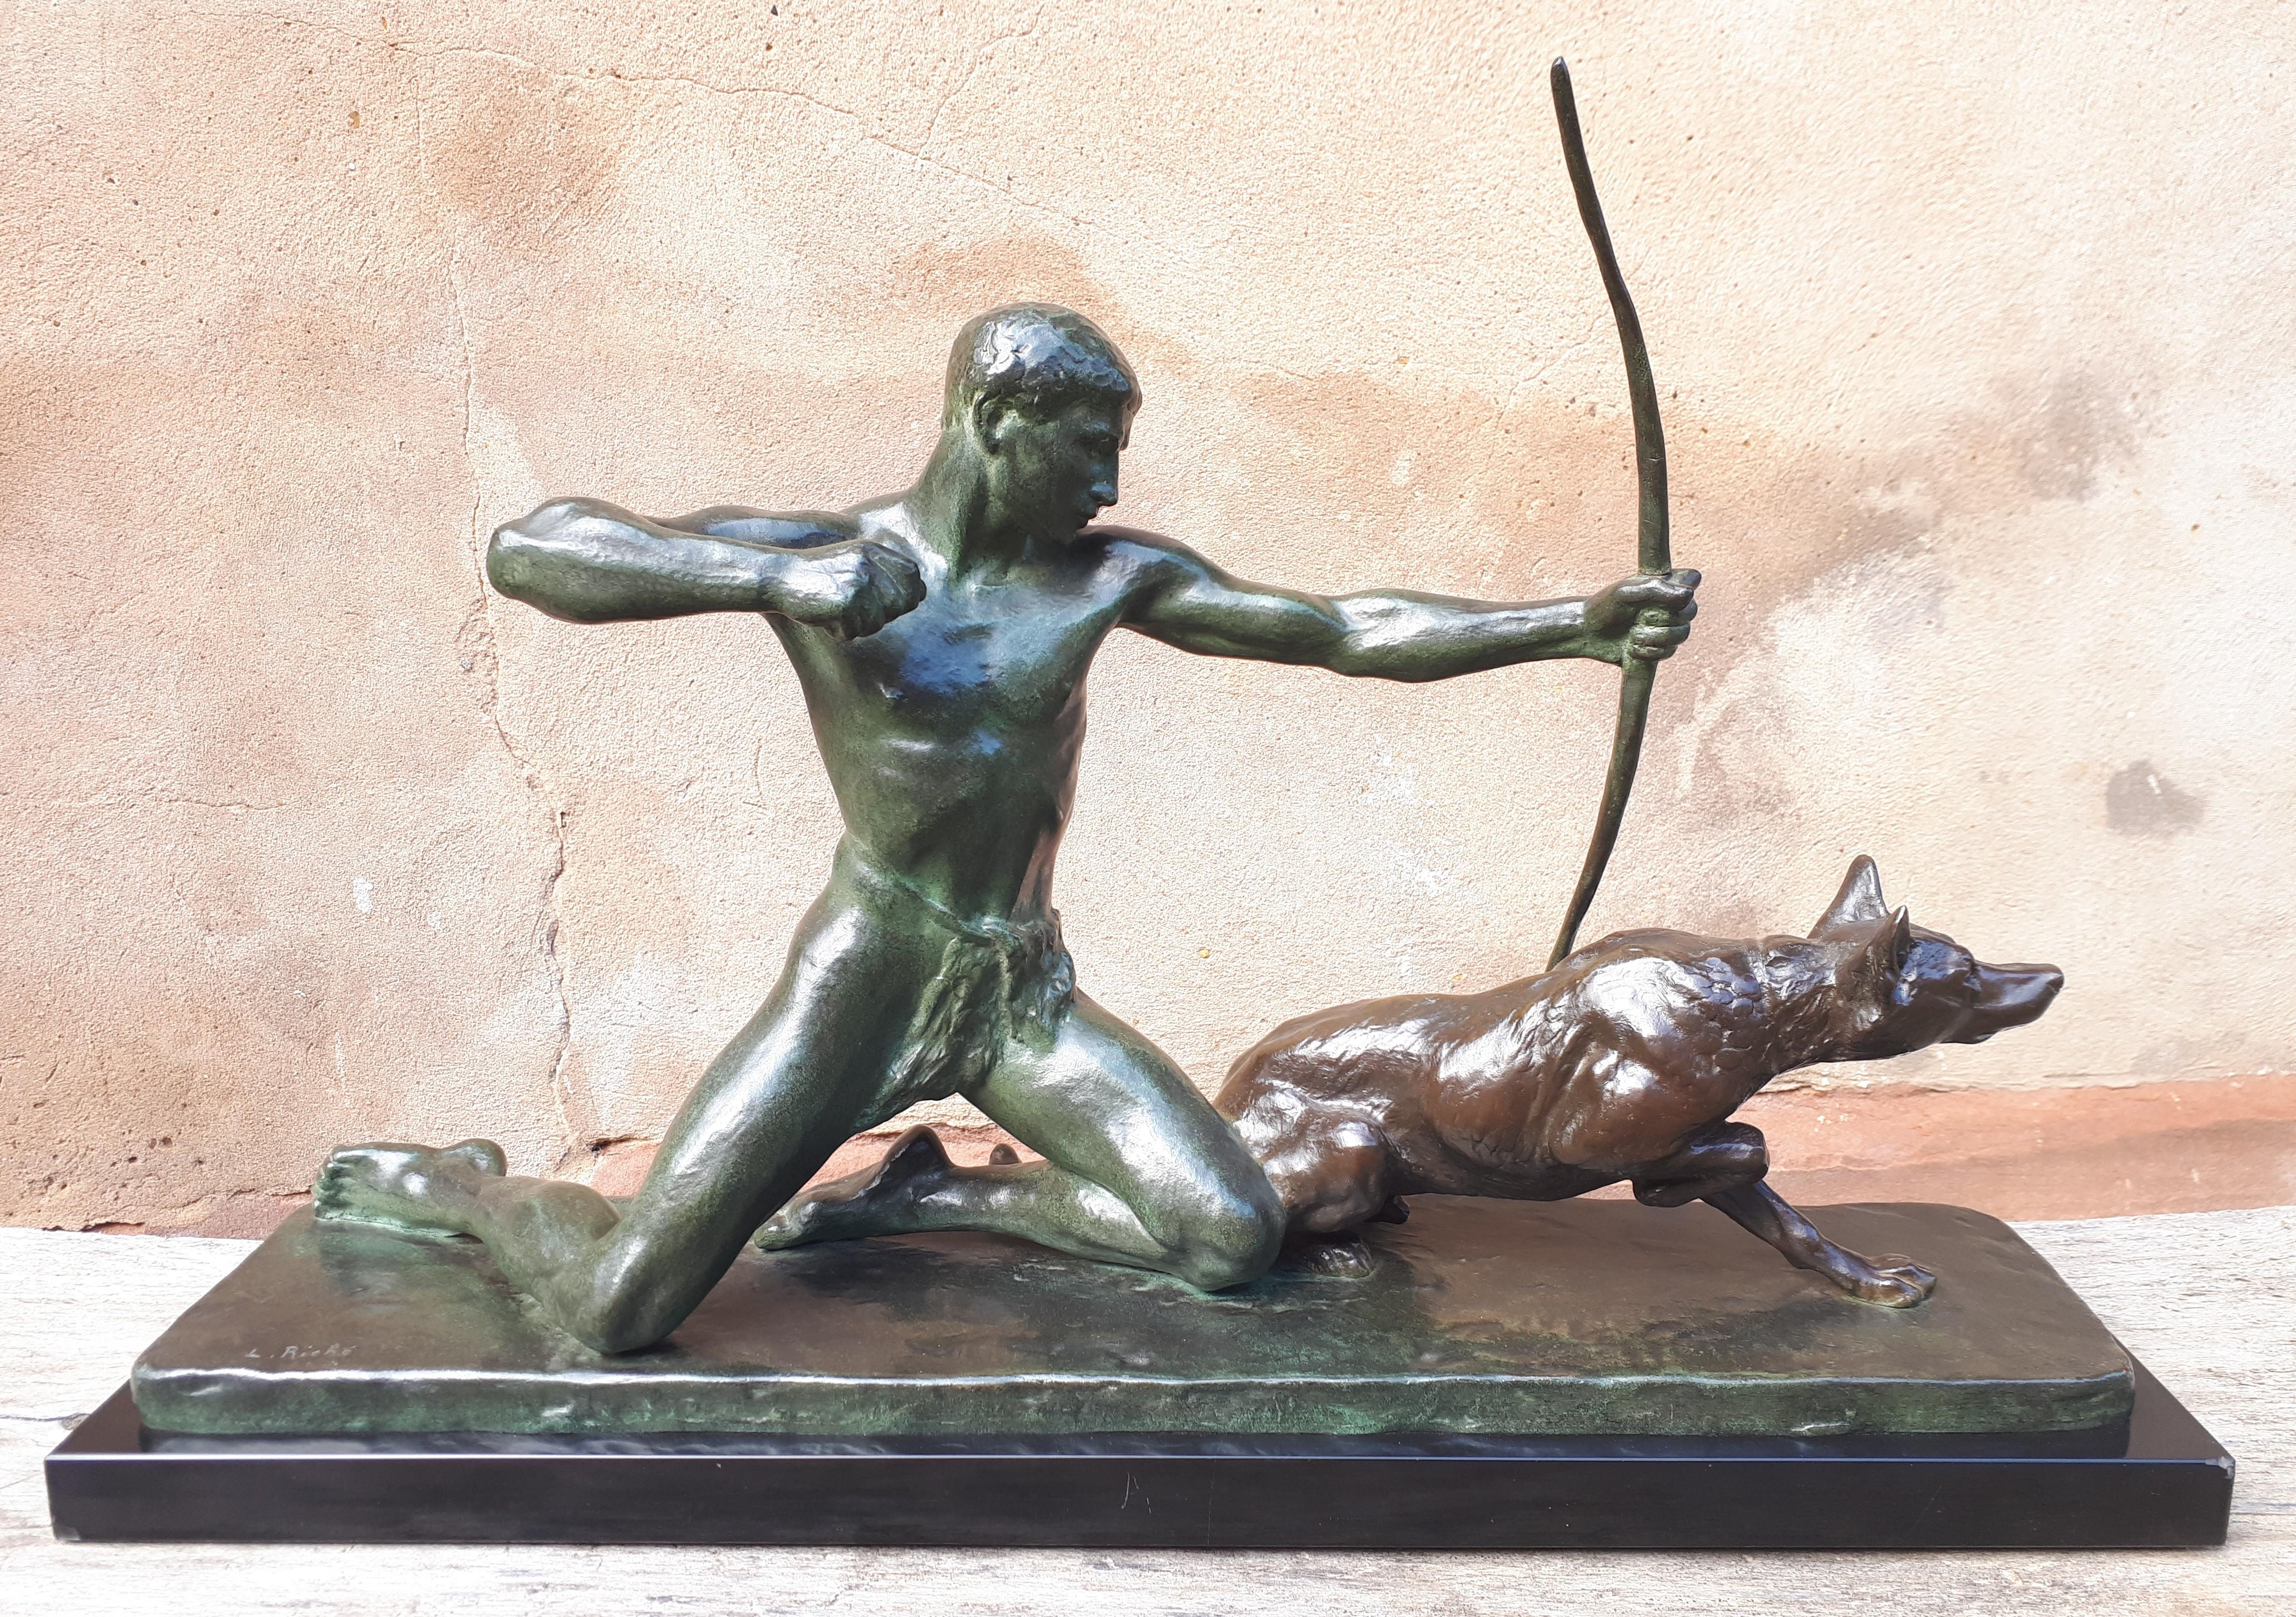 Superbe grand bronze à double patine représentant un chasseur et son chien, sur un socle en marbre noir.
La flèche est partie, le chien n'attend plus qu'elle atteigne sa cible pour la ramener à son maître.
Le marbre présente deux petits éclats dans